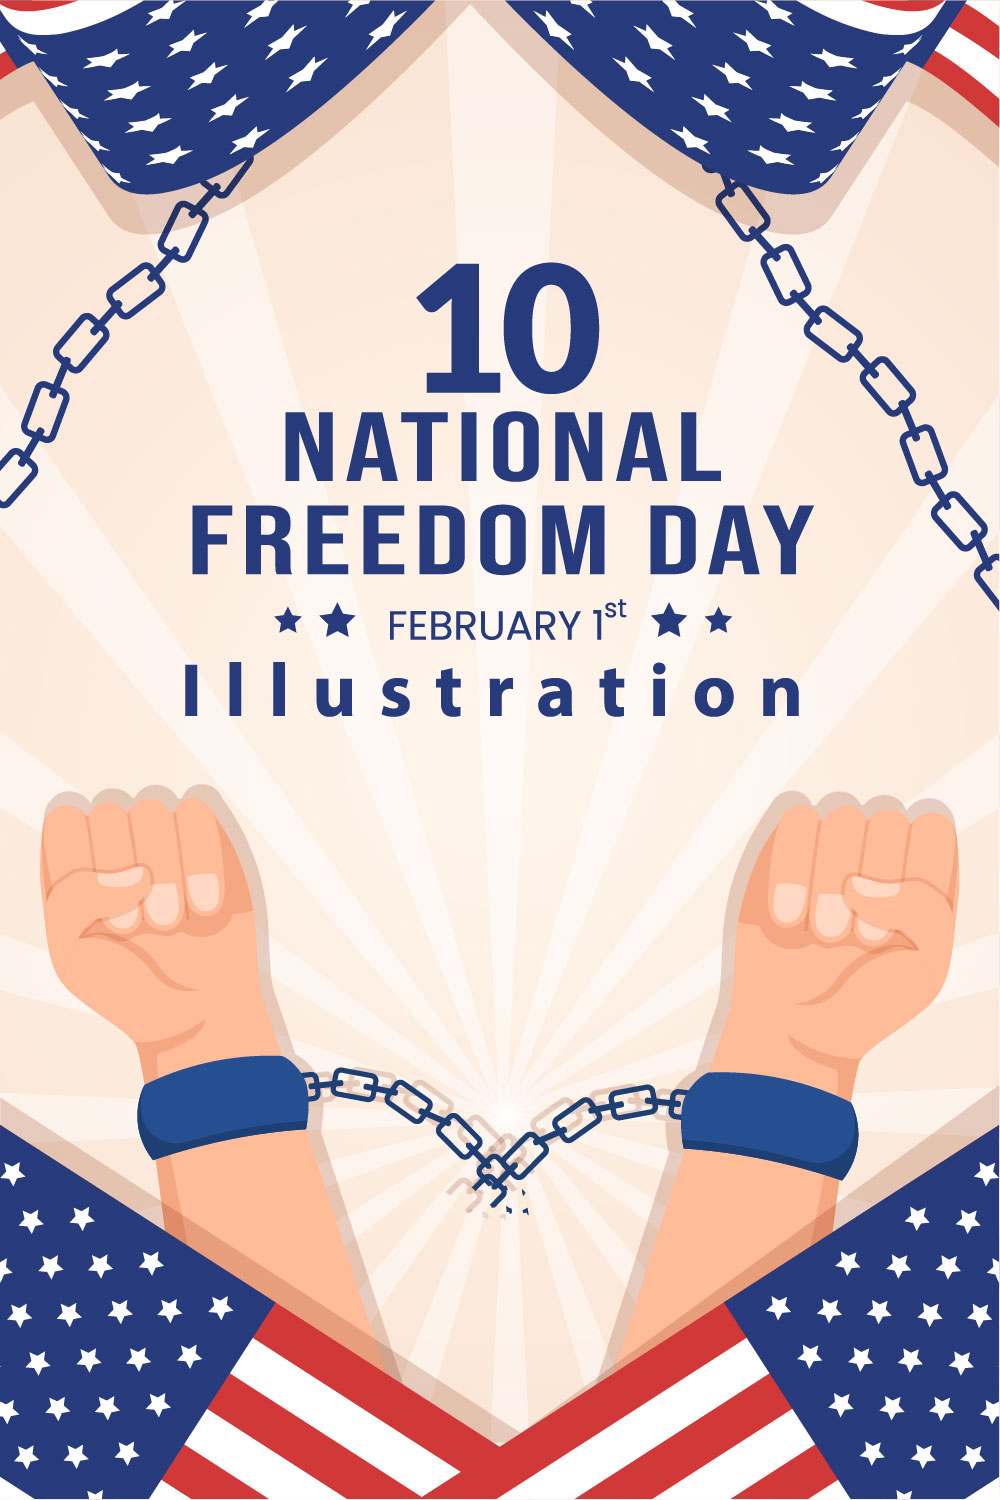 10 National Freedom Day Illustration pinterest image.